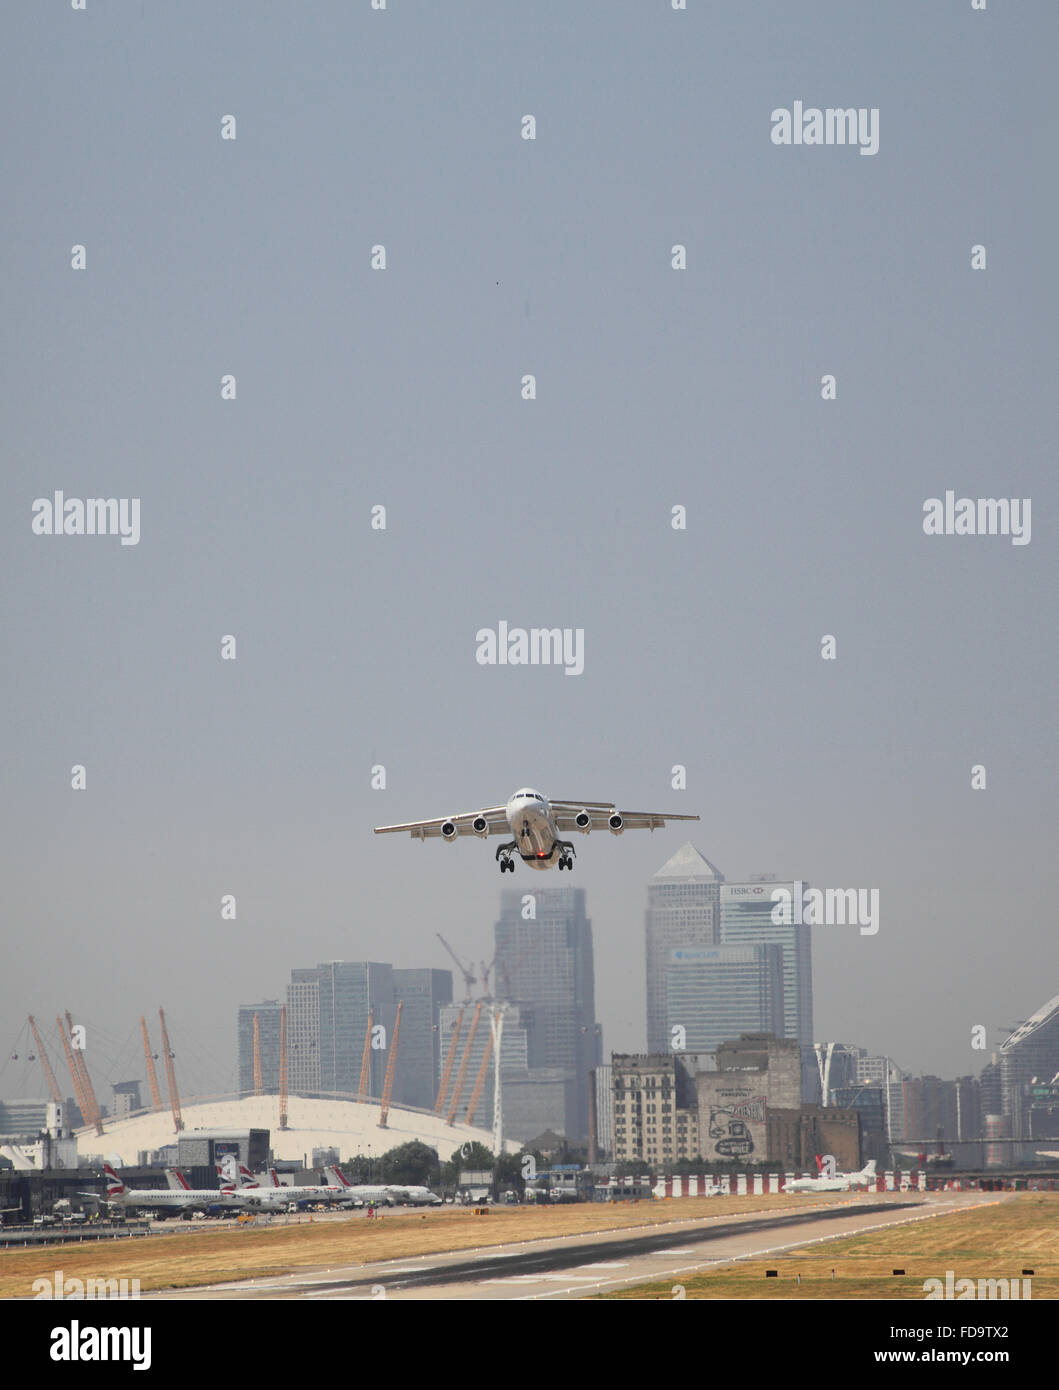 Ein British Aerospace 146 Jet hebt ab Flughafen London City. Canary Wharf und die O2-Arena zeigt im Hintergrund. Stockfoto